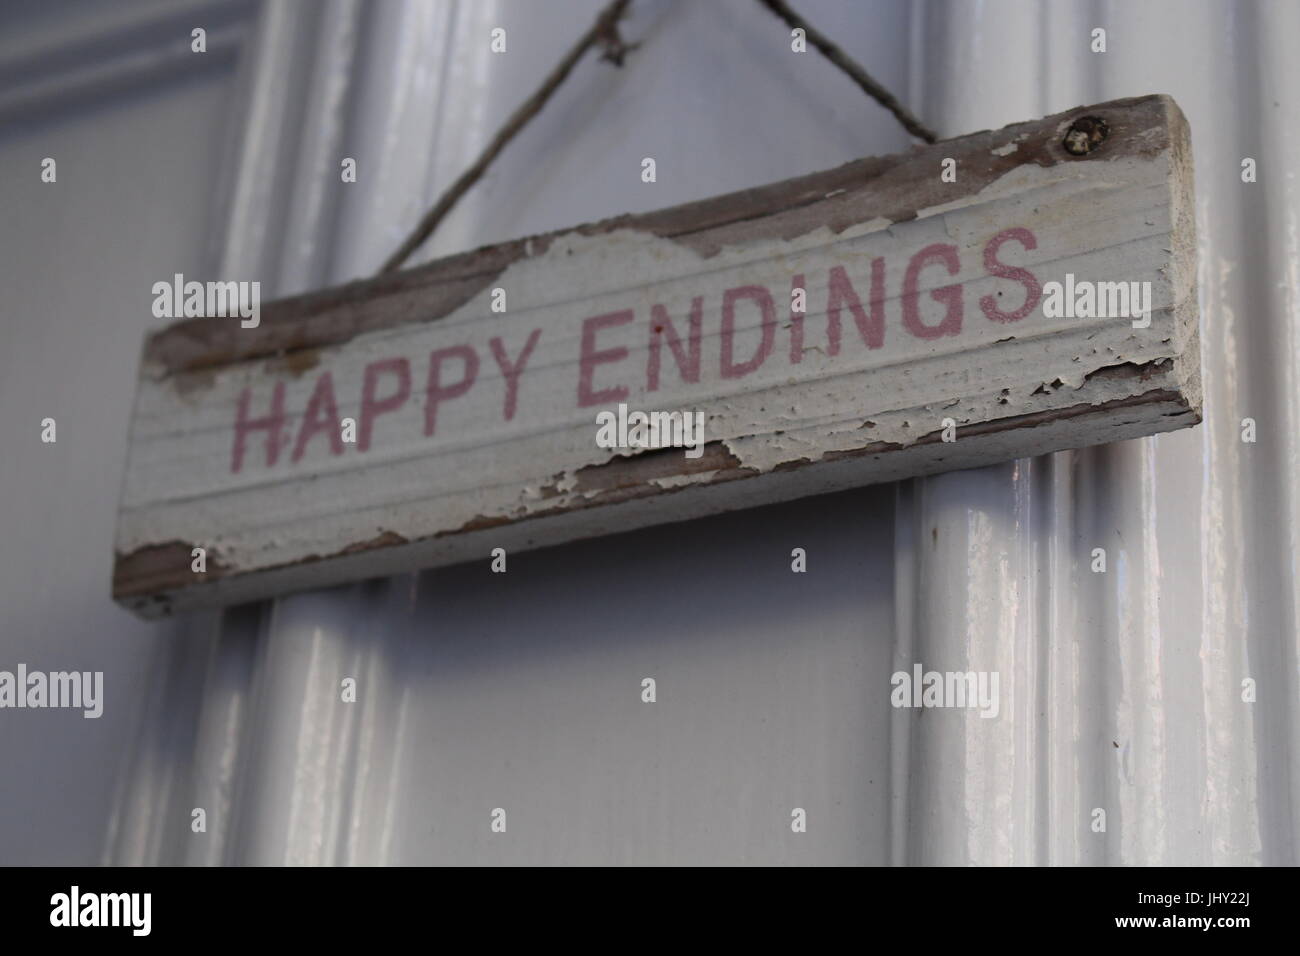 Endings felice, lieto fine, carino segno, shabby chic, Wedding, tema di nozze, segno, Endings felice segno, matrimonio, segno della porta, Foto Stock